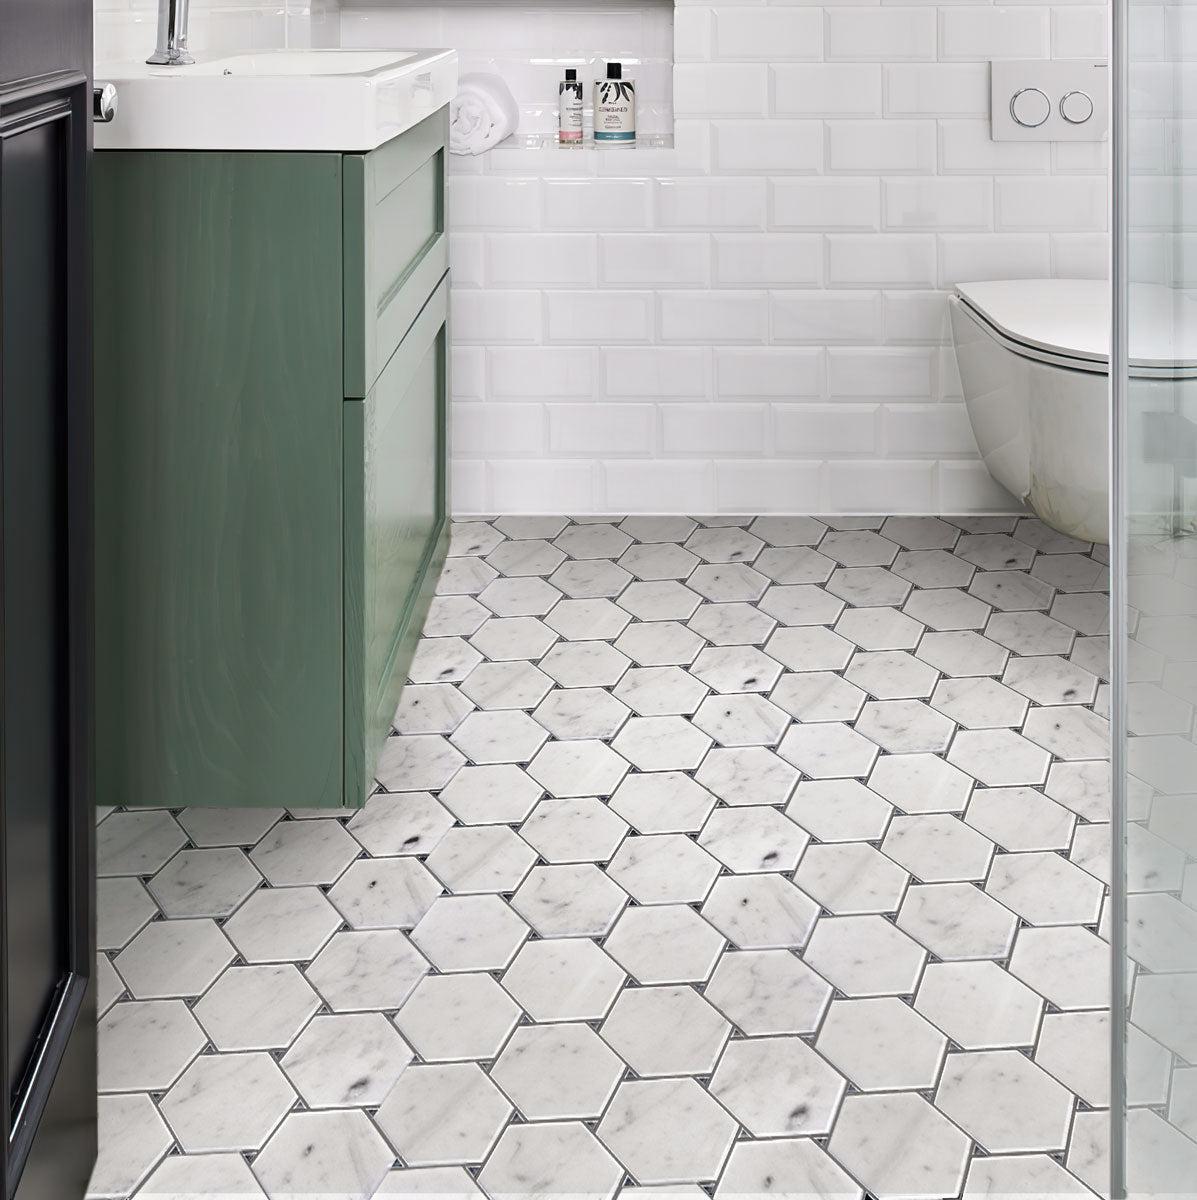 Victoria White Carrara Hexagon Marble Tile bathroom floor